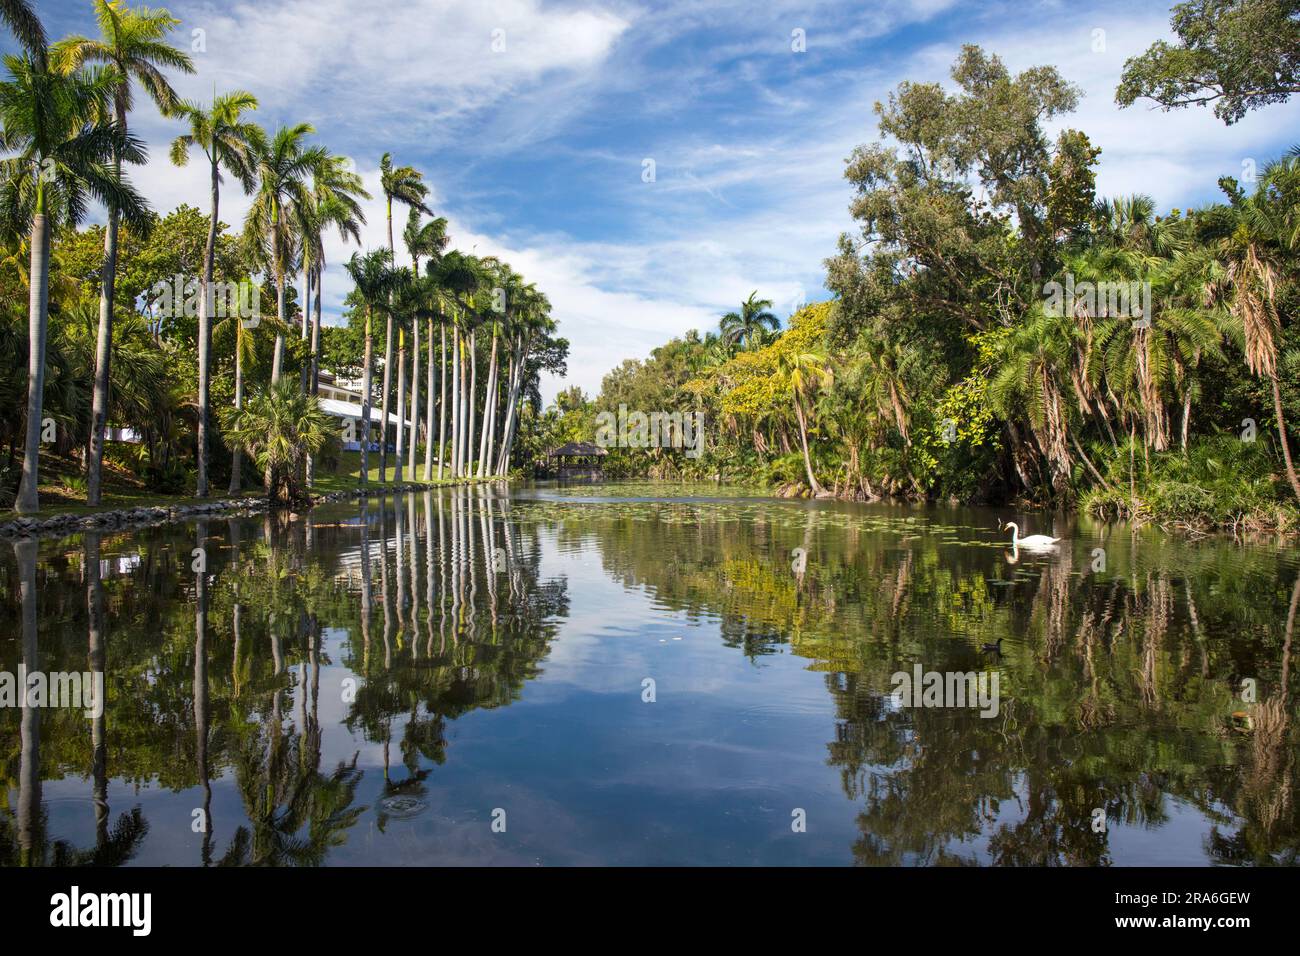 Fort Lauderdale, Florida, USA. Ammira la tranquilla Bonnet House Slough, un lago nei giardini della storica Bonnet House, nota anche come Bartlett Estate. Foto Stock